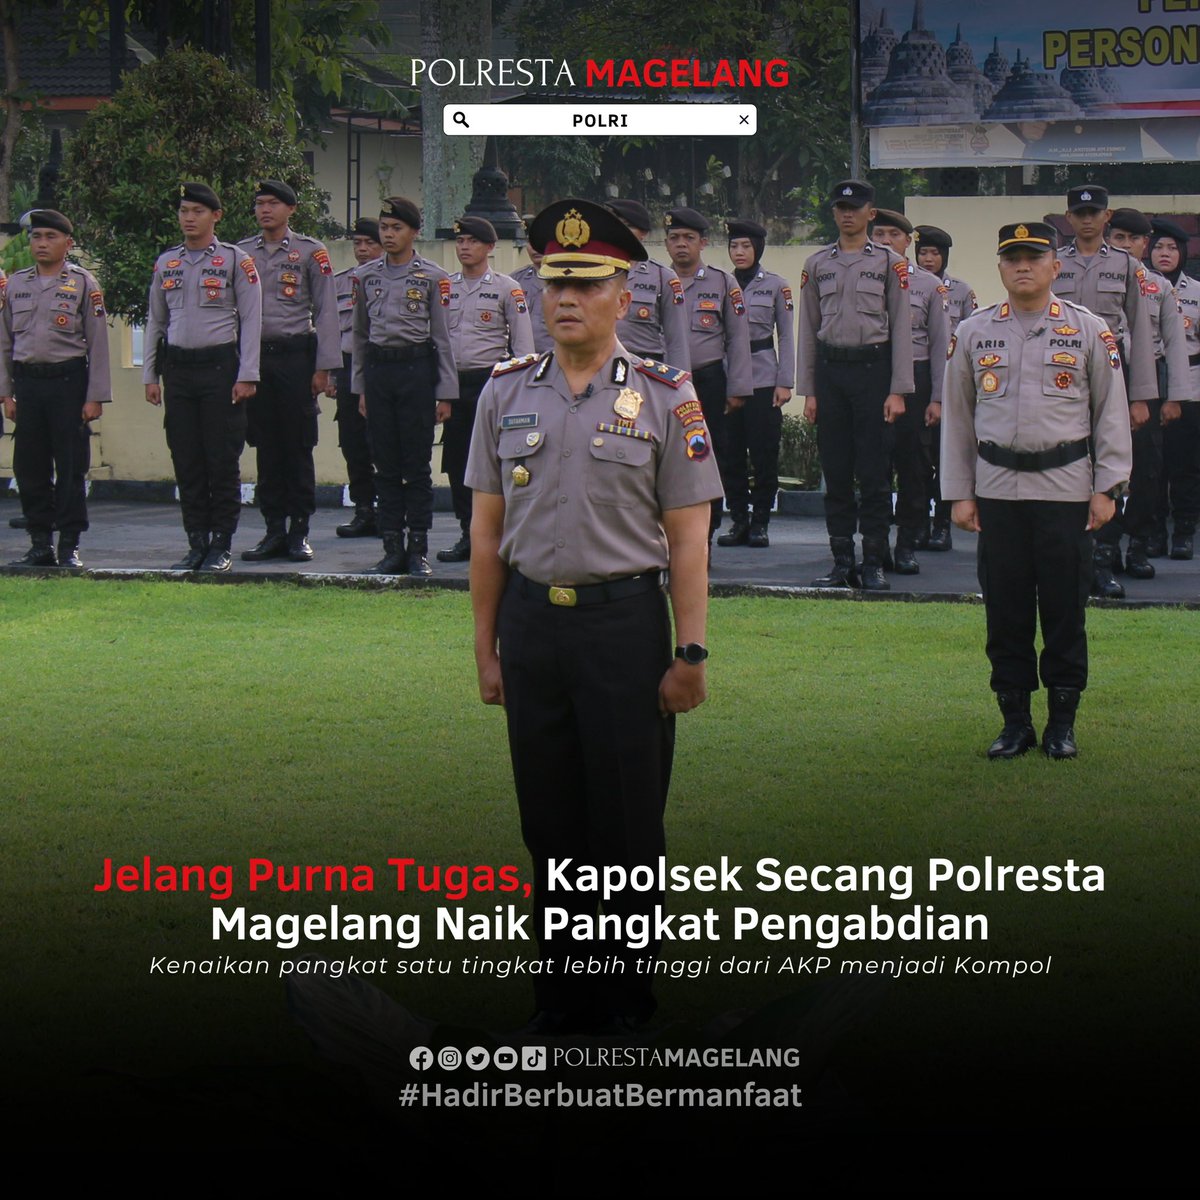 Kapolsek Secang Polresta Magelang menerima kenaikan pangkat satu tingkat lebih tinggi dari Ajun Komisaris Polisi (AKP) menjadi Kompol (Komisaris Polisi).

#infojawatengah #BeritaUpdate #PolriPresisi #Magelangraya #Magelang